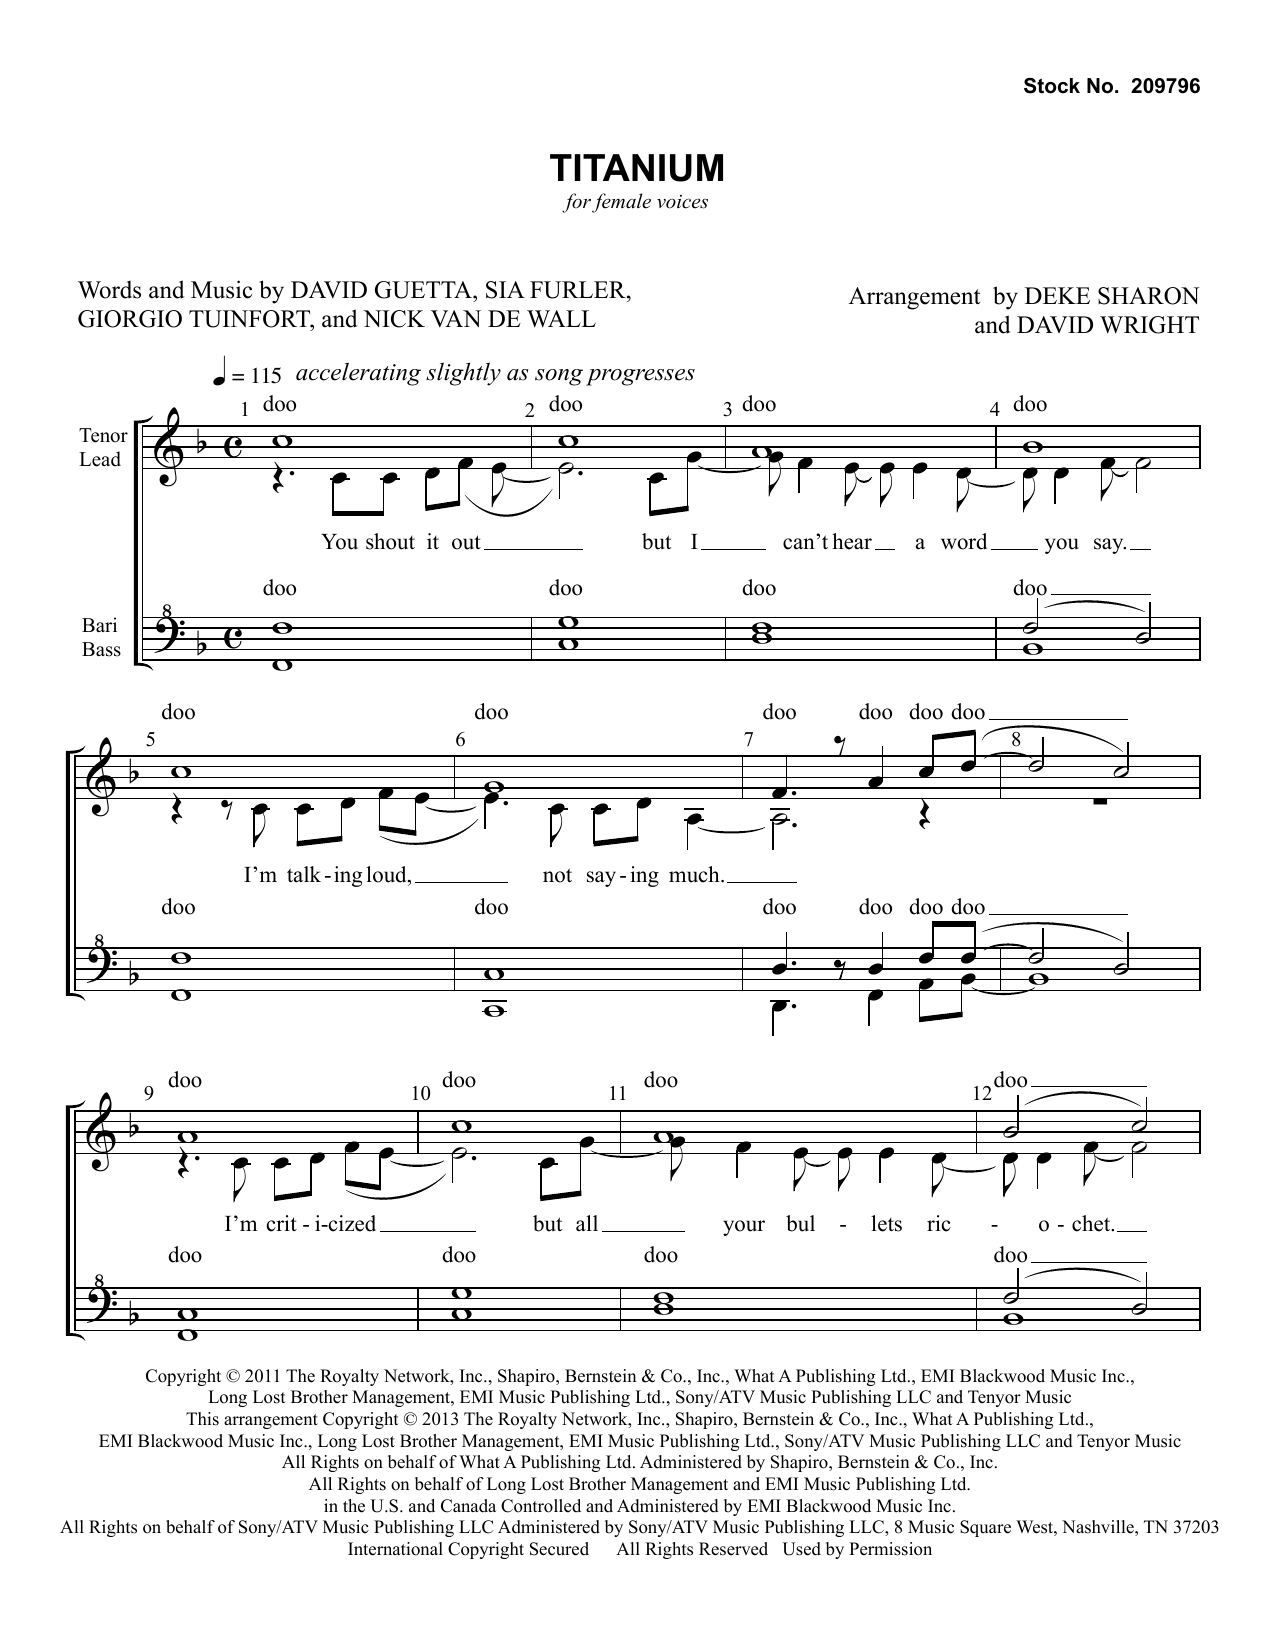 David Guetta Titanium (feat. Sia) (arr. Deke Sharon, David Wright) sheet music notes and chords arranged for TTBB Choir